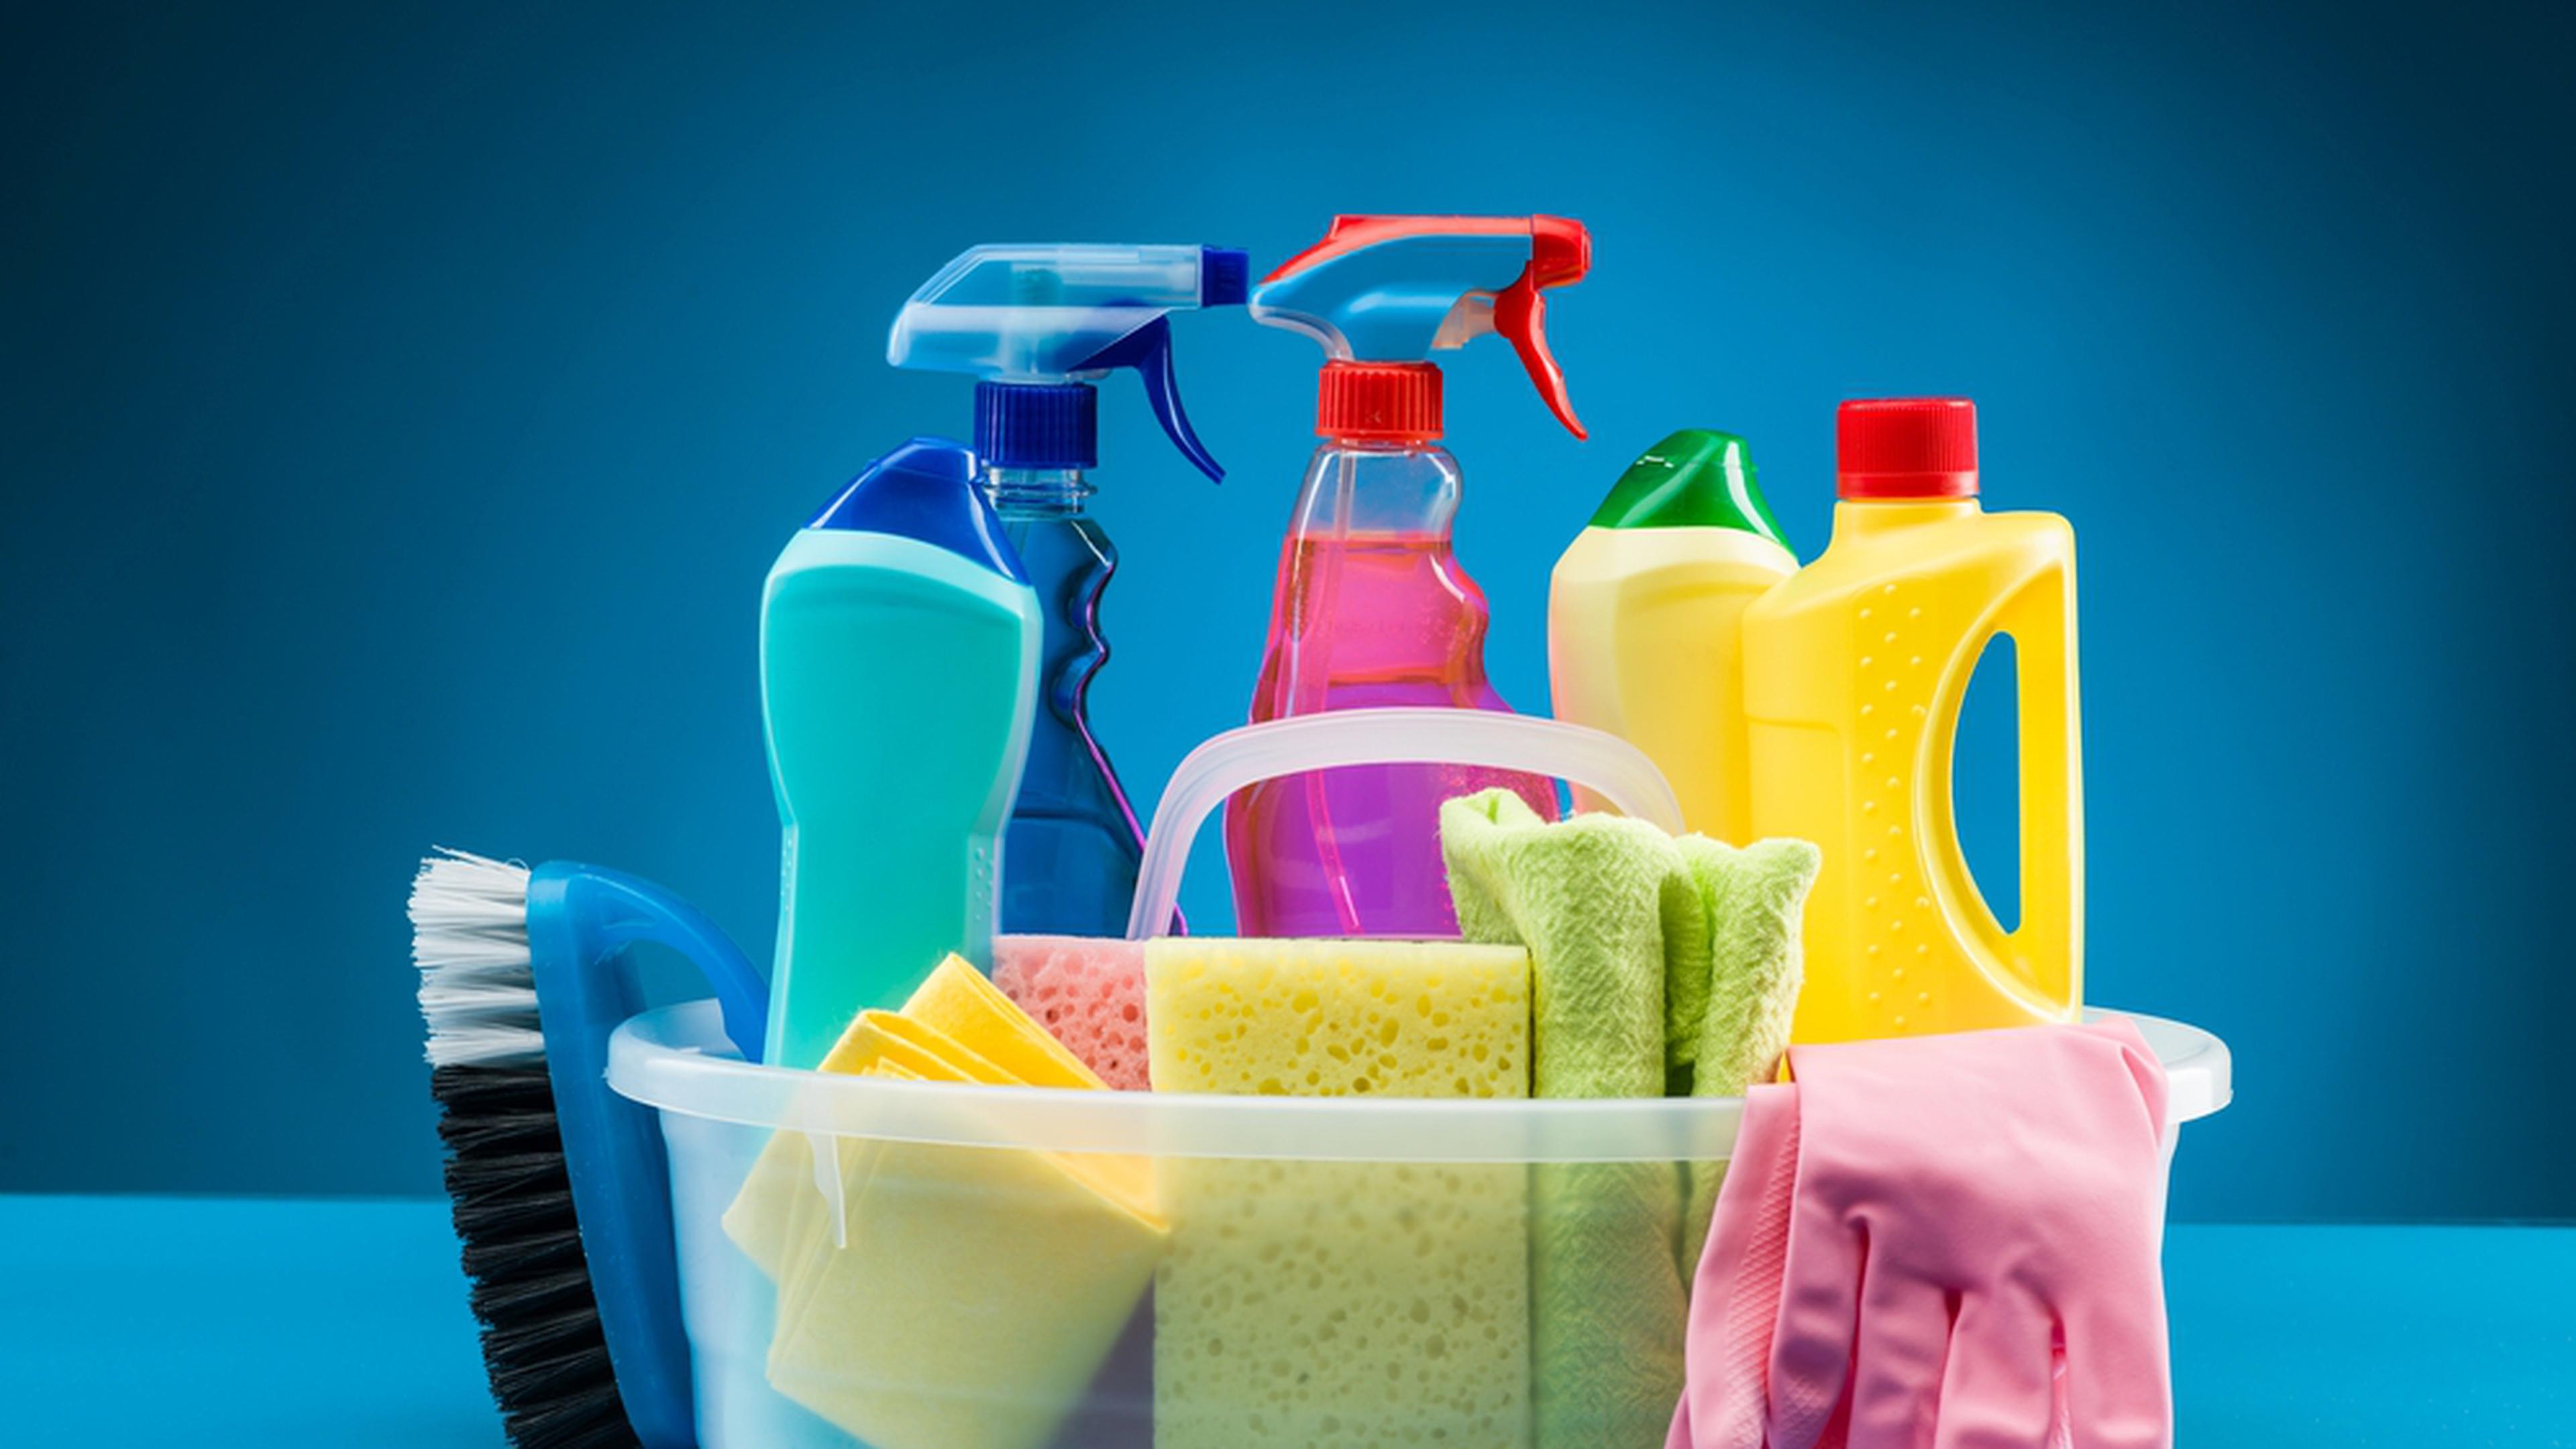 VIDEO] Produits ménagers : gare aux substances toxiques